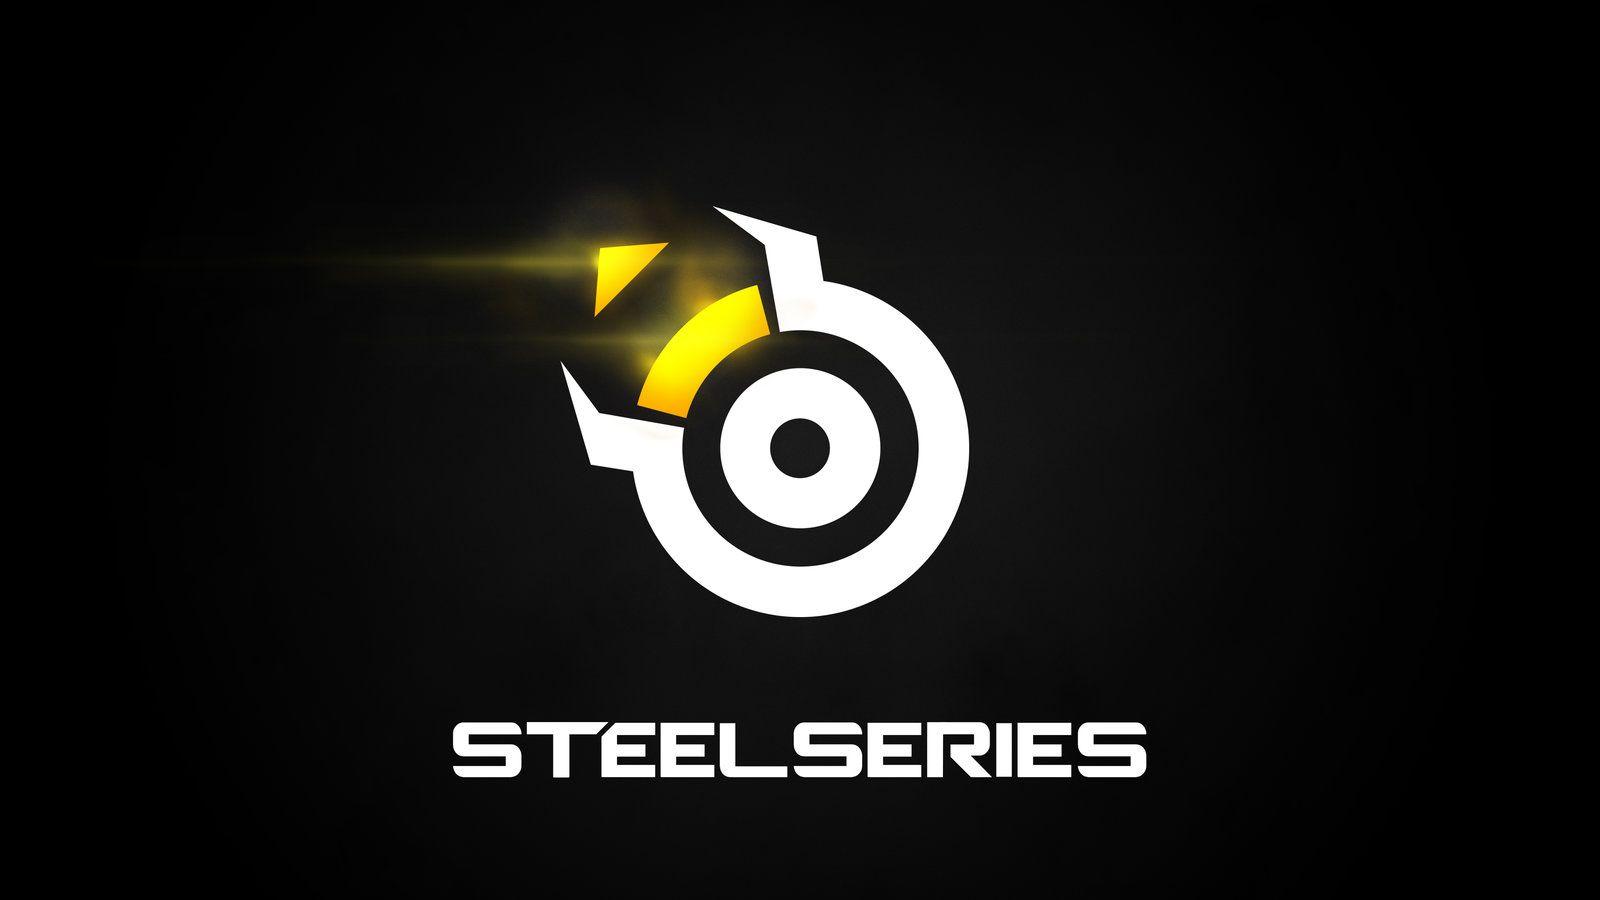 SteelSeries Logo - SteelSeries Wallpaper